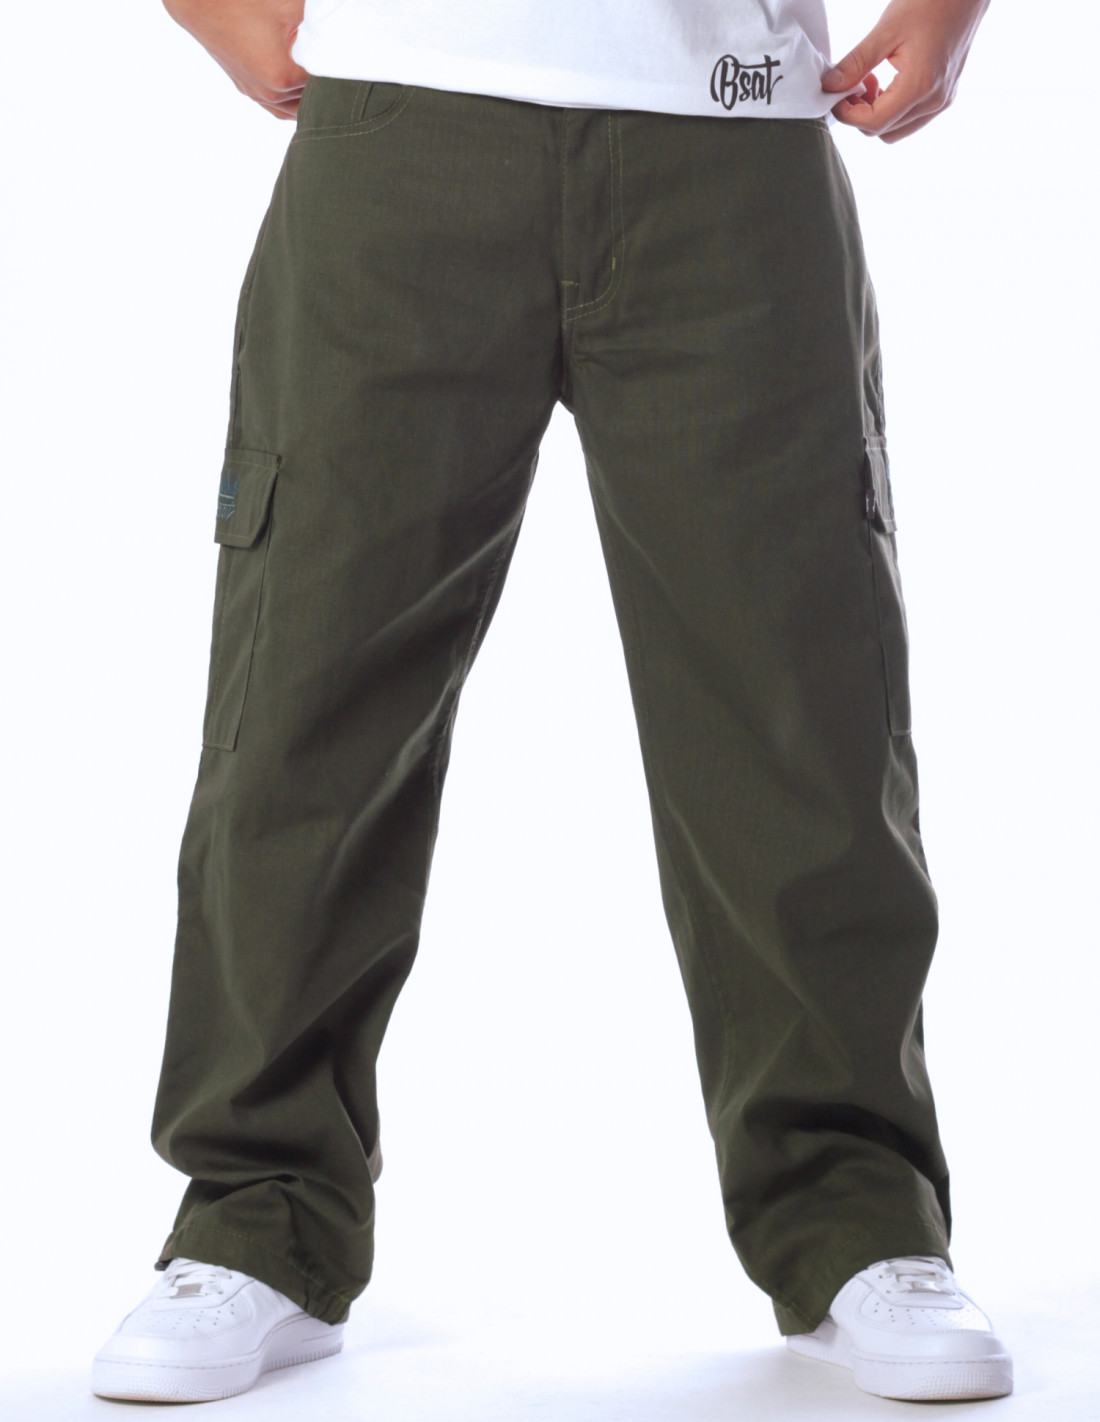 BSAT Combat Cargo Pants Dark Olive